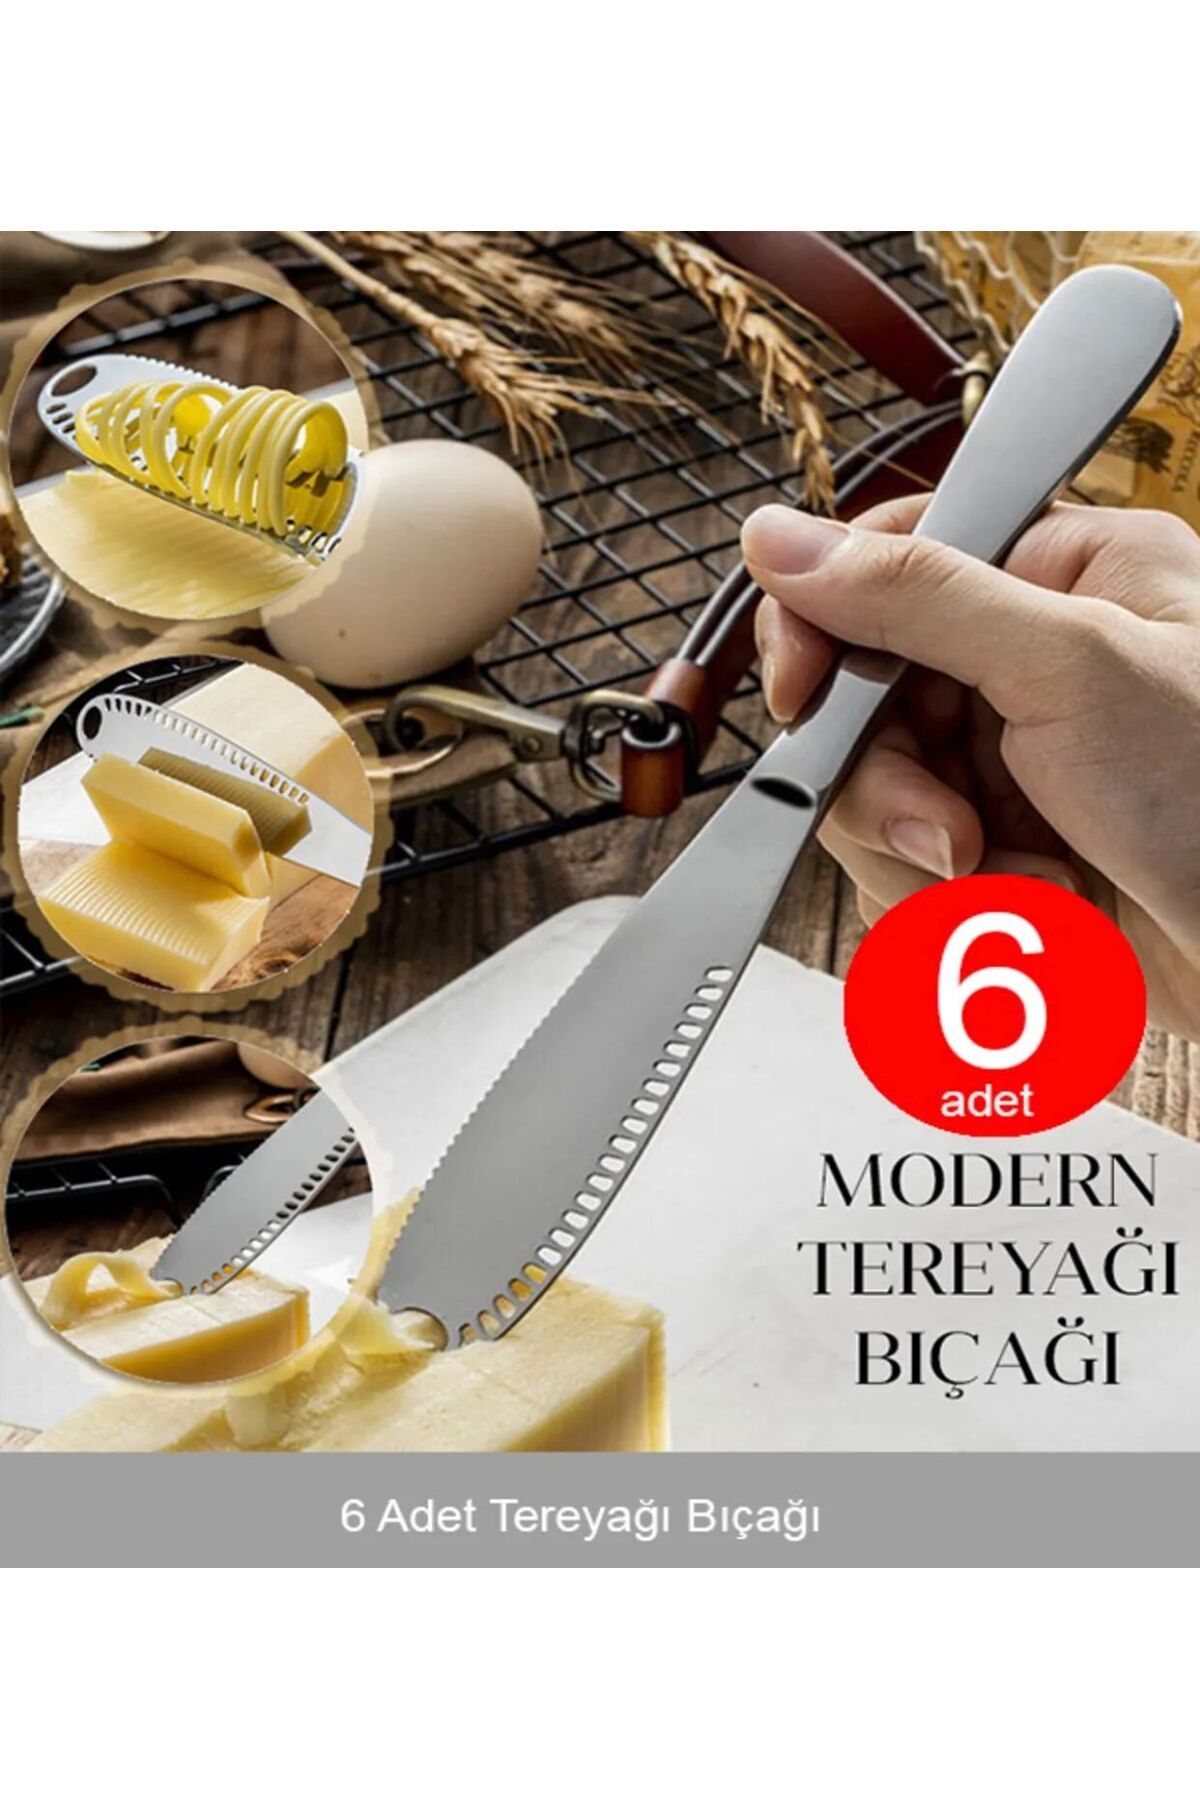 YDGR 6 Adet Modern Tereyağı Bıçağı | Kahvaltı Bıçağı - 6'lı Bal , Kaymak , Tereyağı Bıçağı